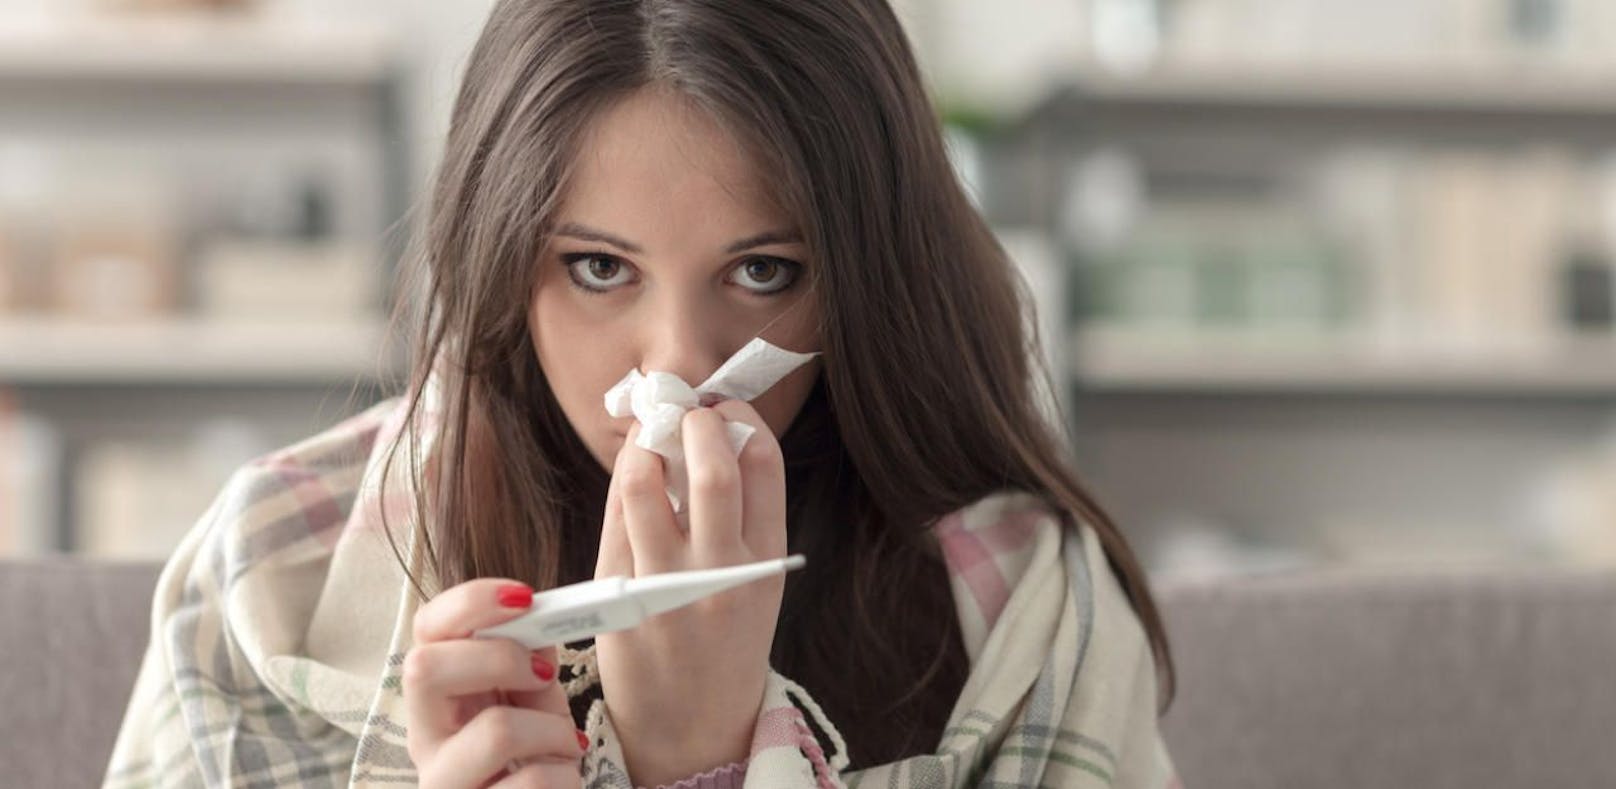 Derzeit gibt es bei Erkältungen ein Drittel weniger Fälle, bei der echten Grippe sind es sogar mehr als 80 Prozent weniger.